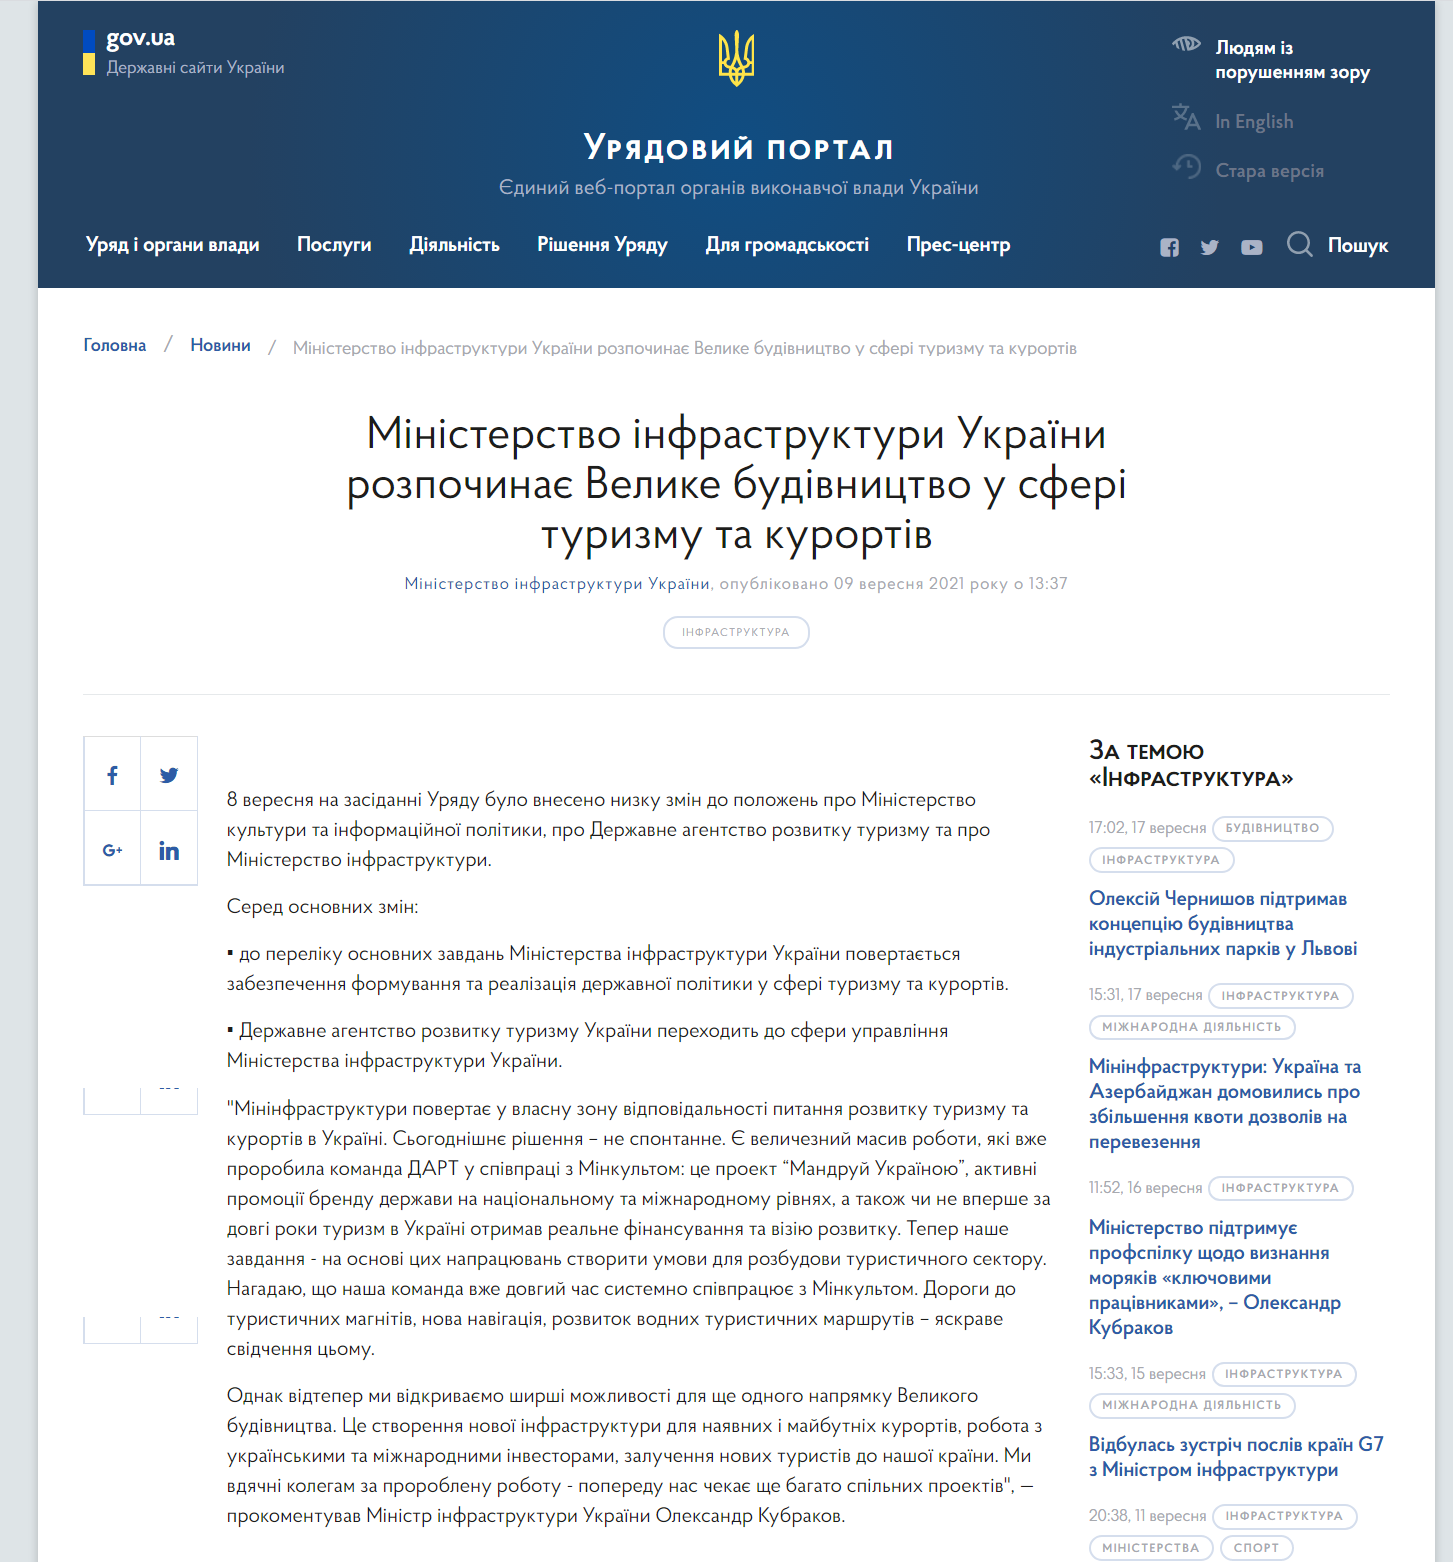 https://www.kmu.gov.ua/news/ministerstvo-infrastrukturi-ukrayini-rozpochinaye-velike-budivnictvo-u-sferi-turizmu-ta-kurortiv